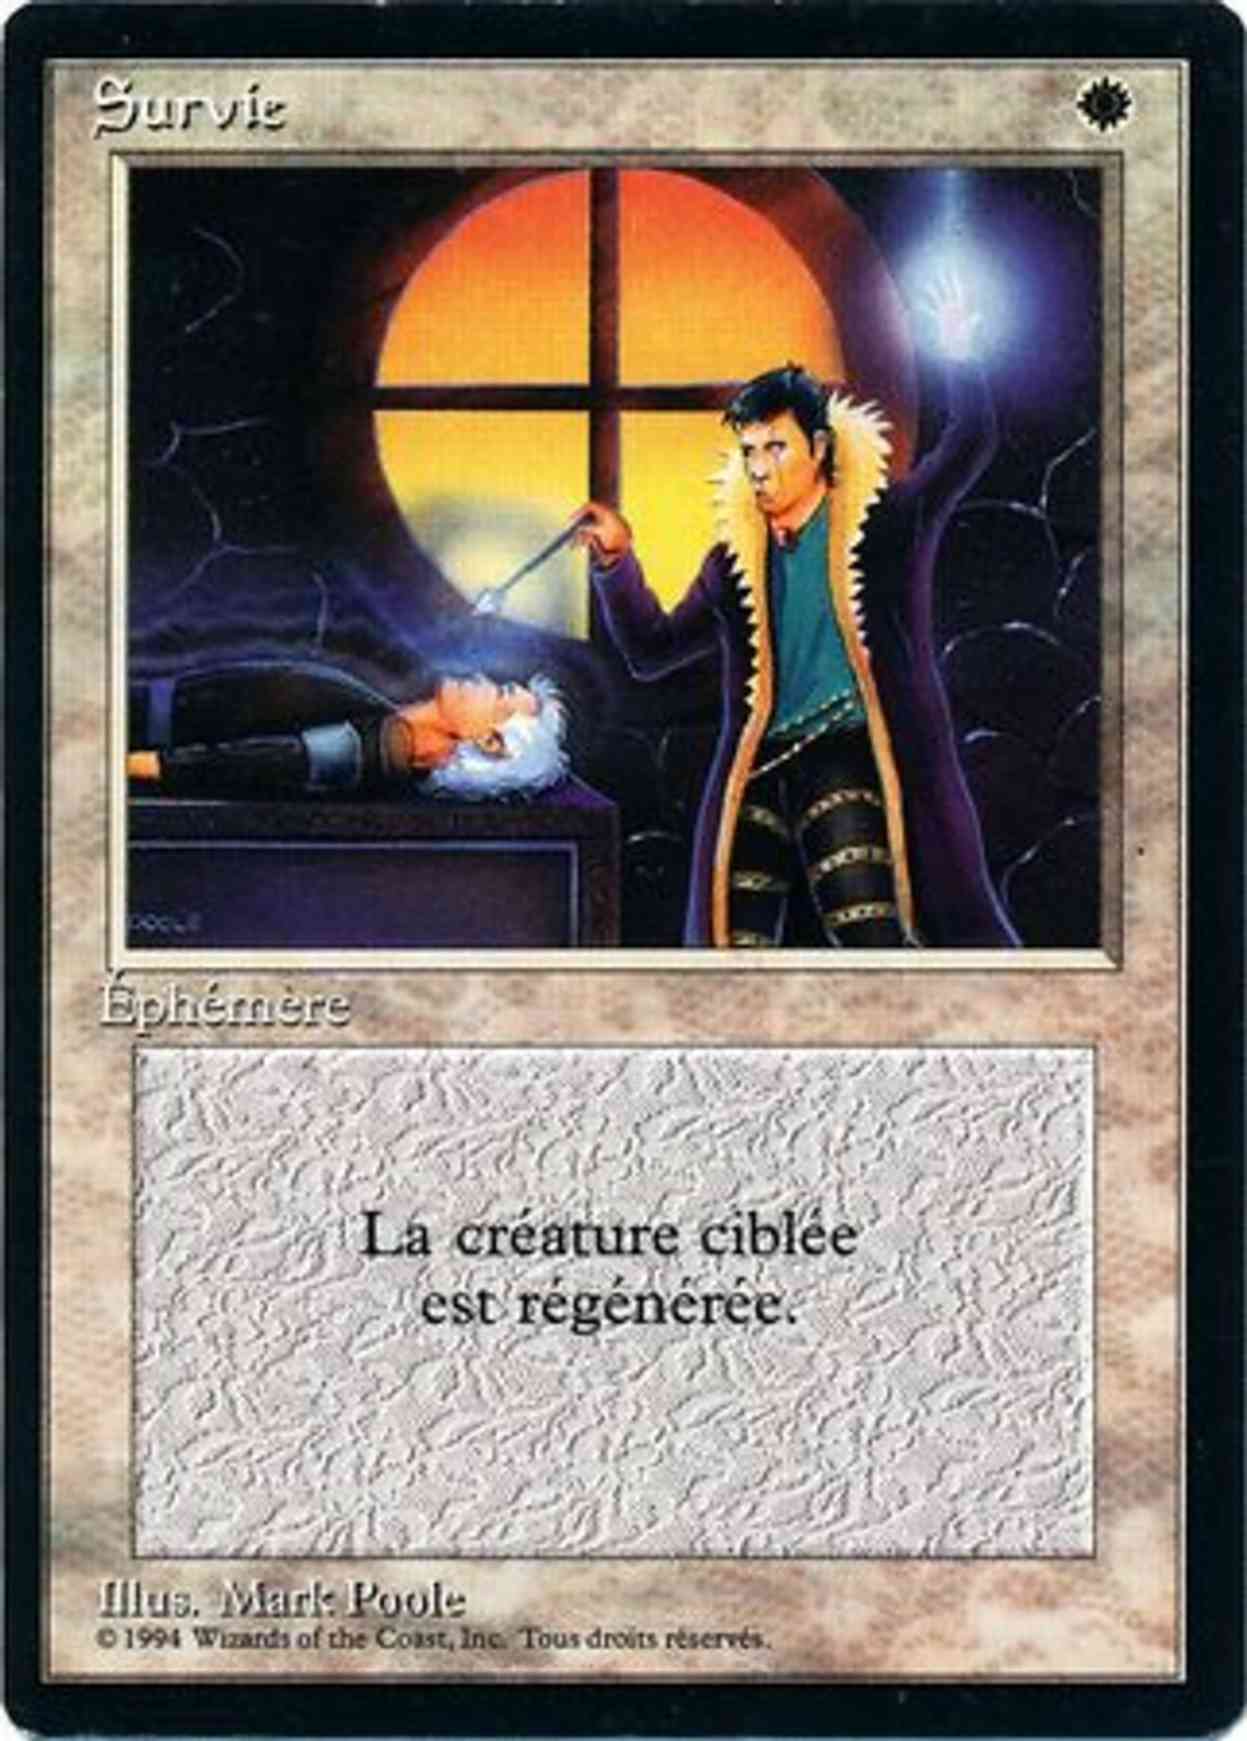 Death Ward magic card front